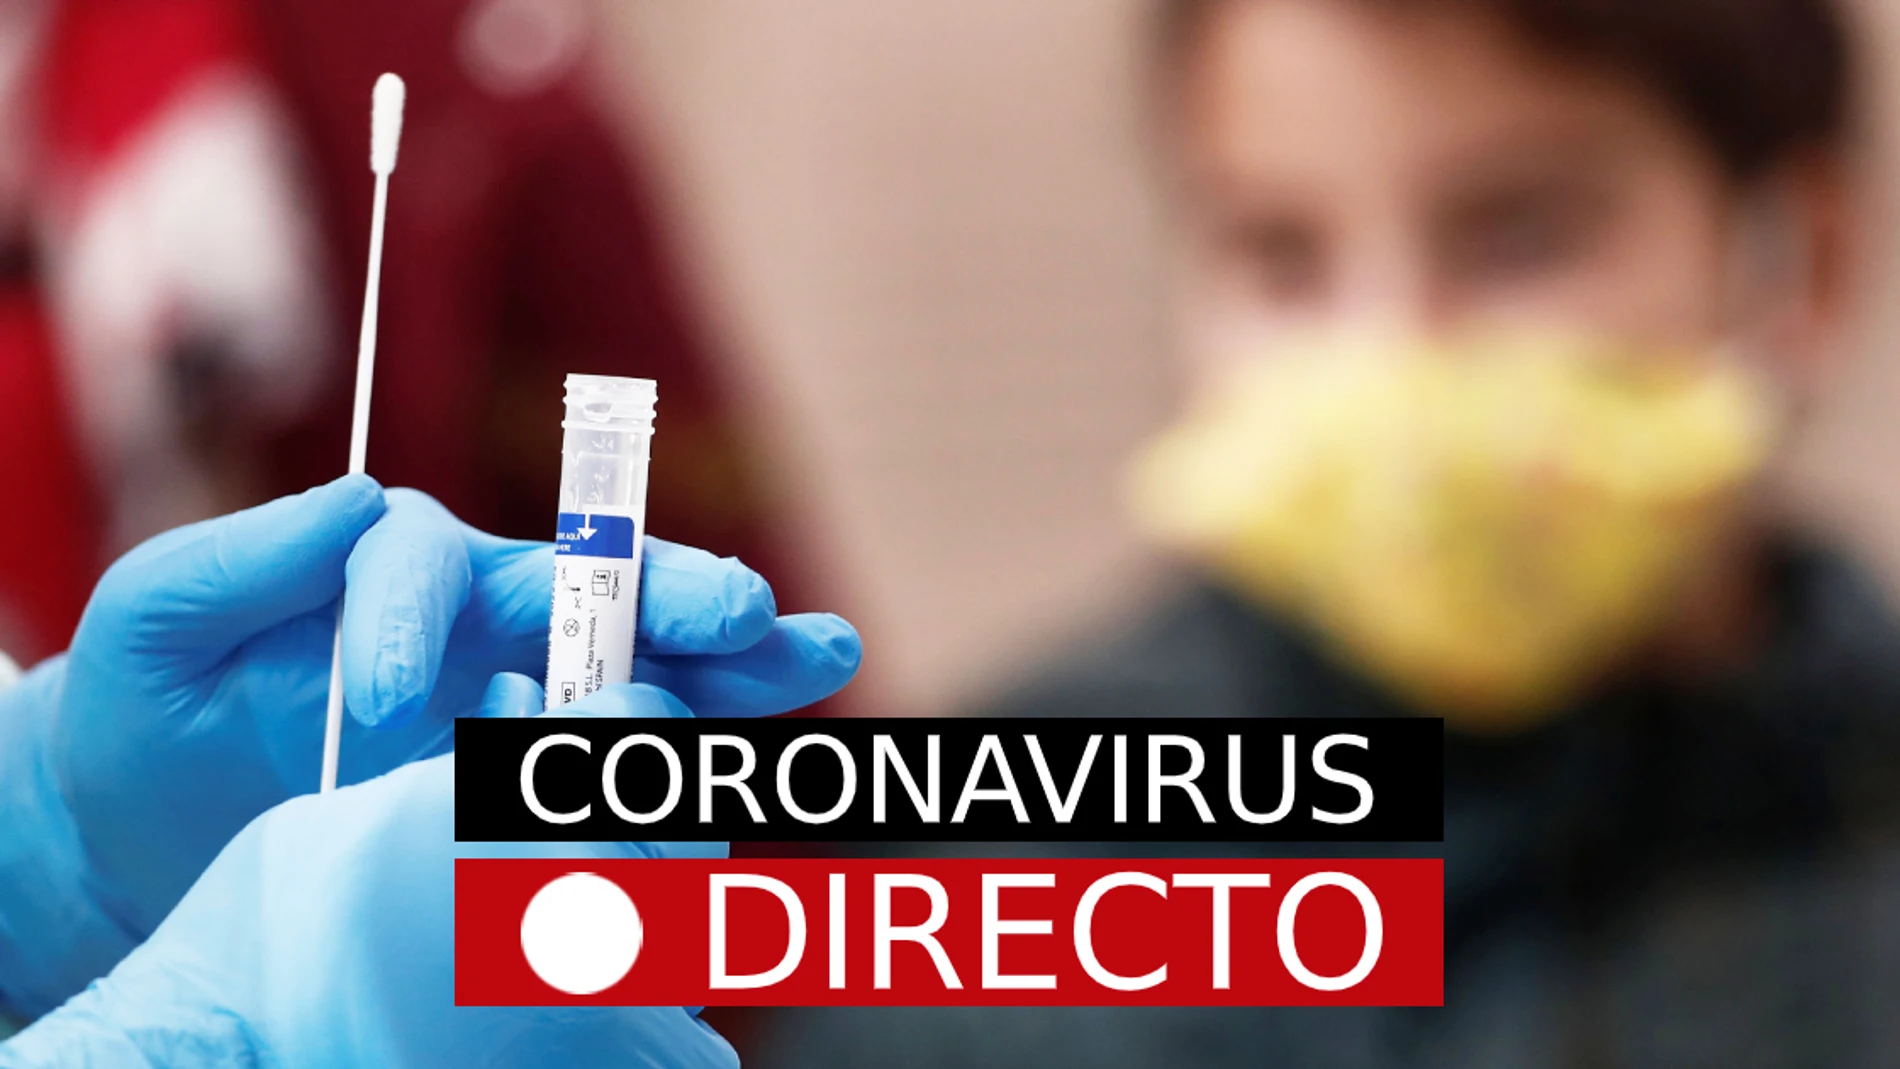 La última hora del coronavirus en España y en el mundo, en directo en laSexta.com